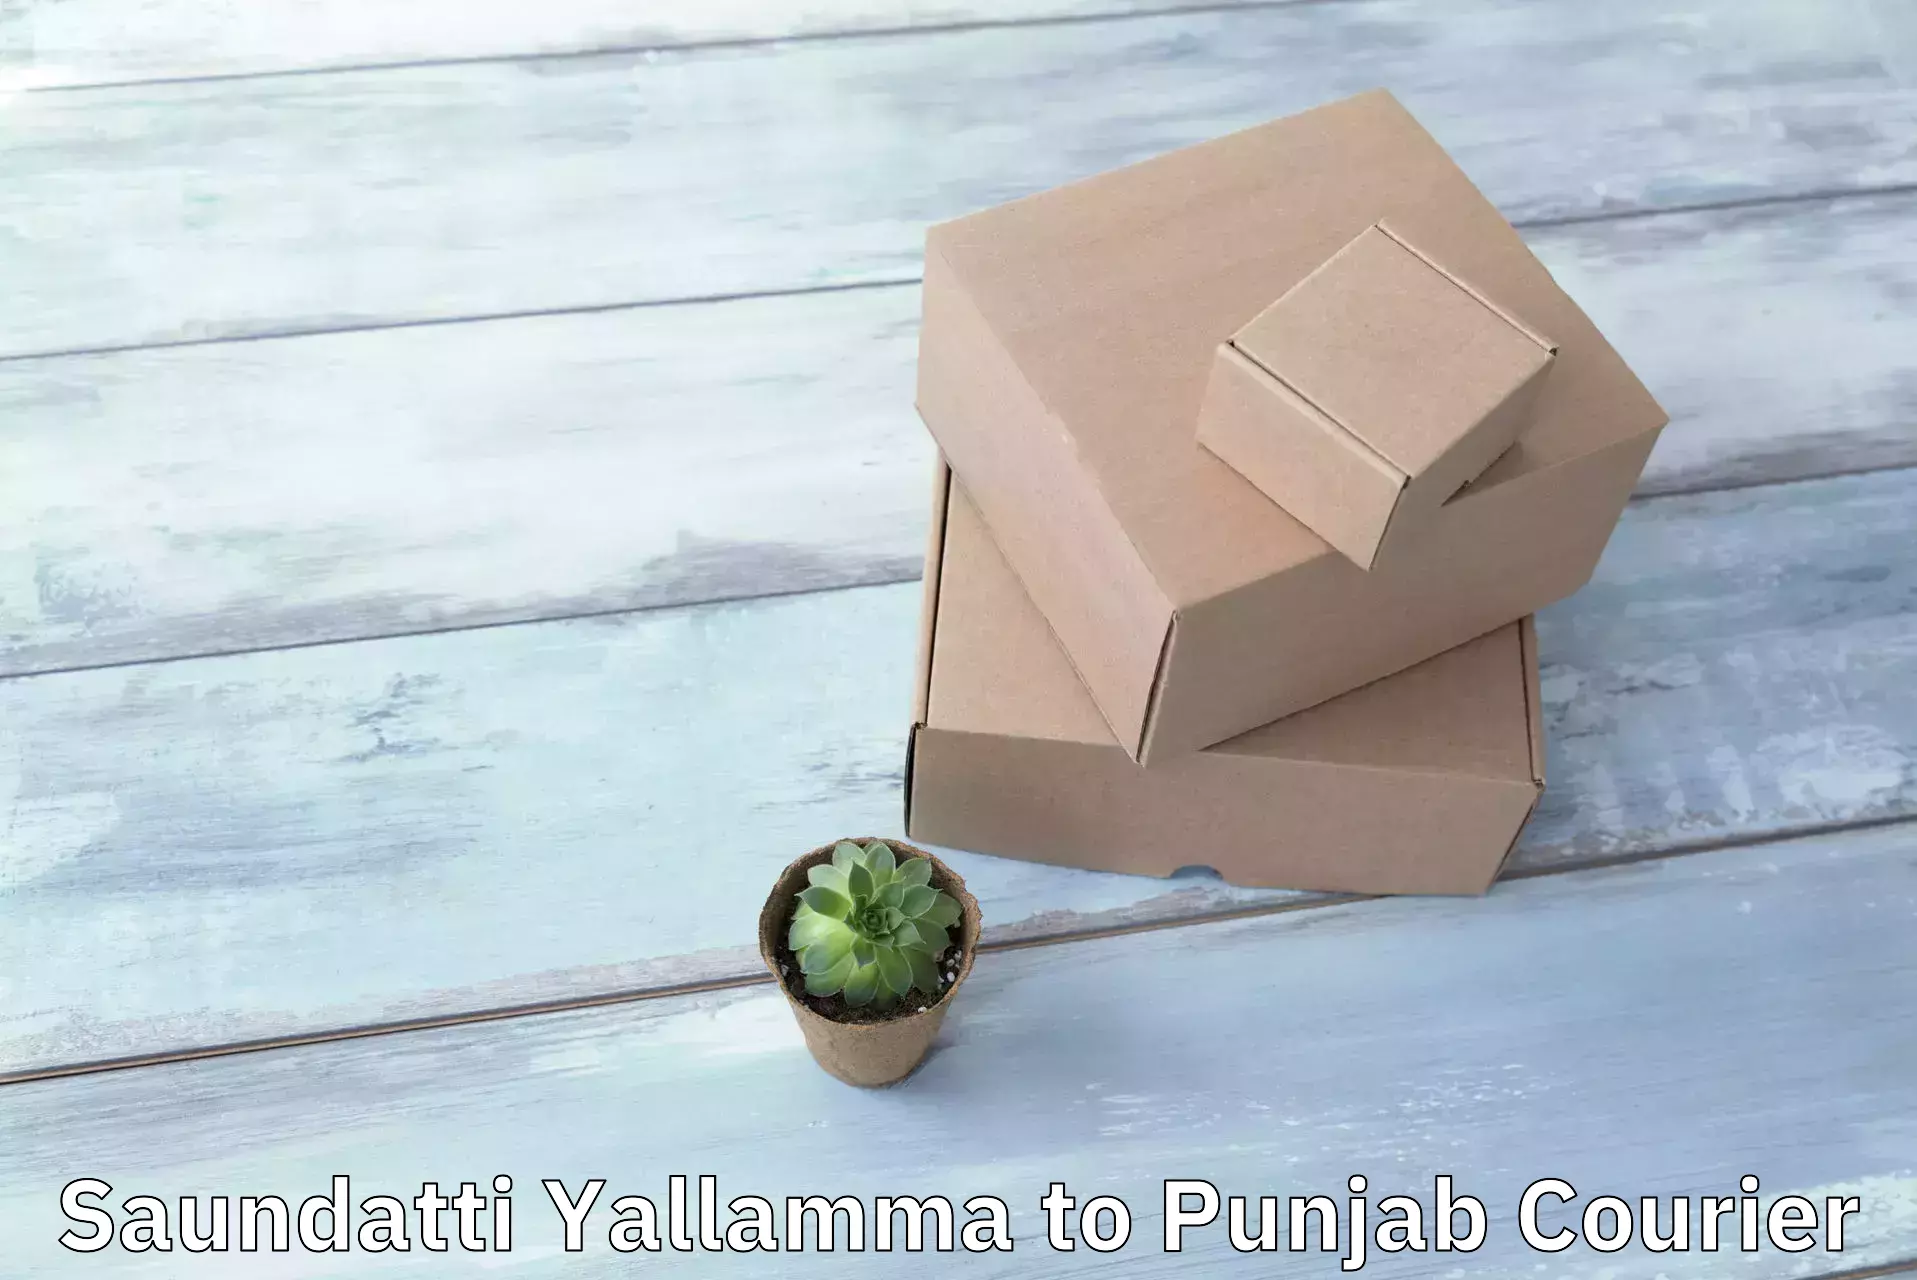 Nationwide shipping coverage Saundatti Yallamma to Punjab